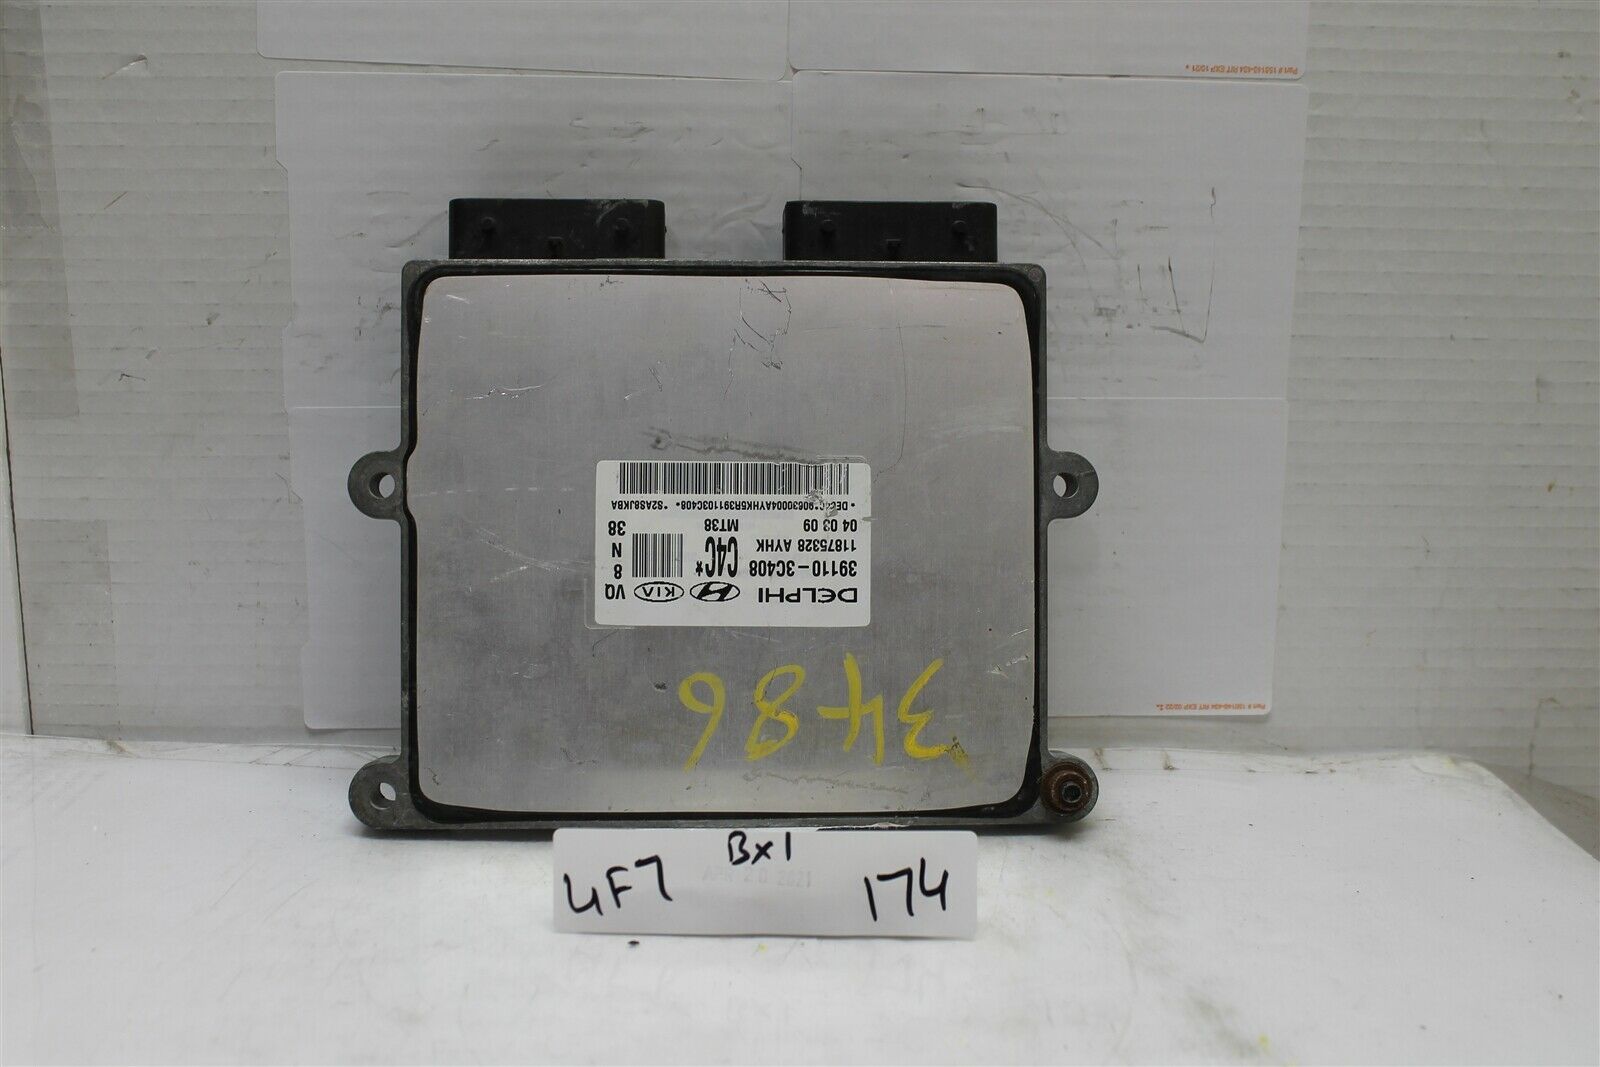 2009 Hyundai Entourage Engine Control Unit ECU 391103C408 Module 174 4F7-B1 - $22.09